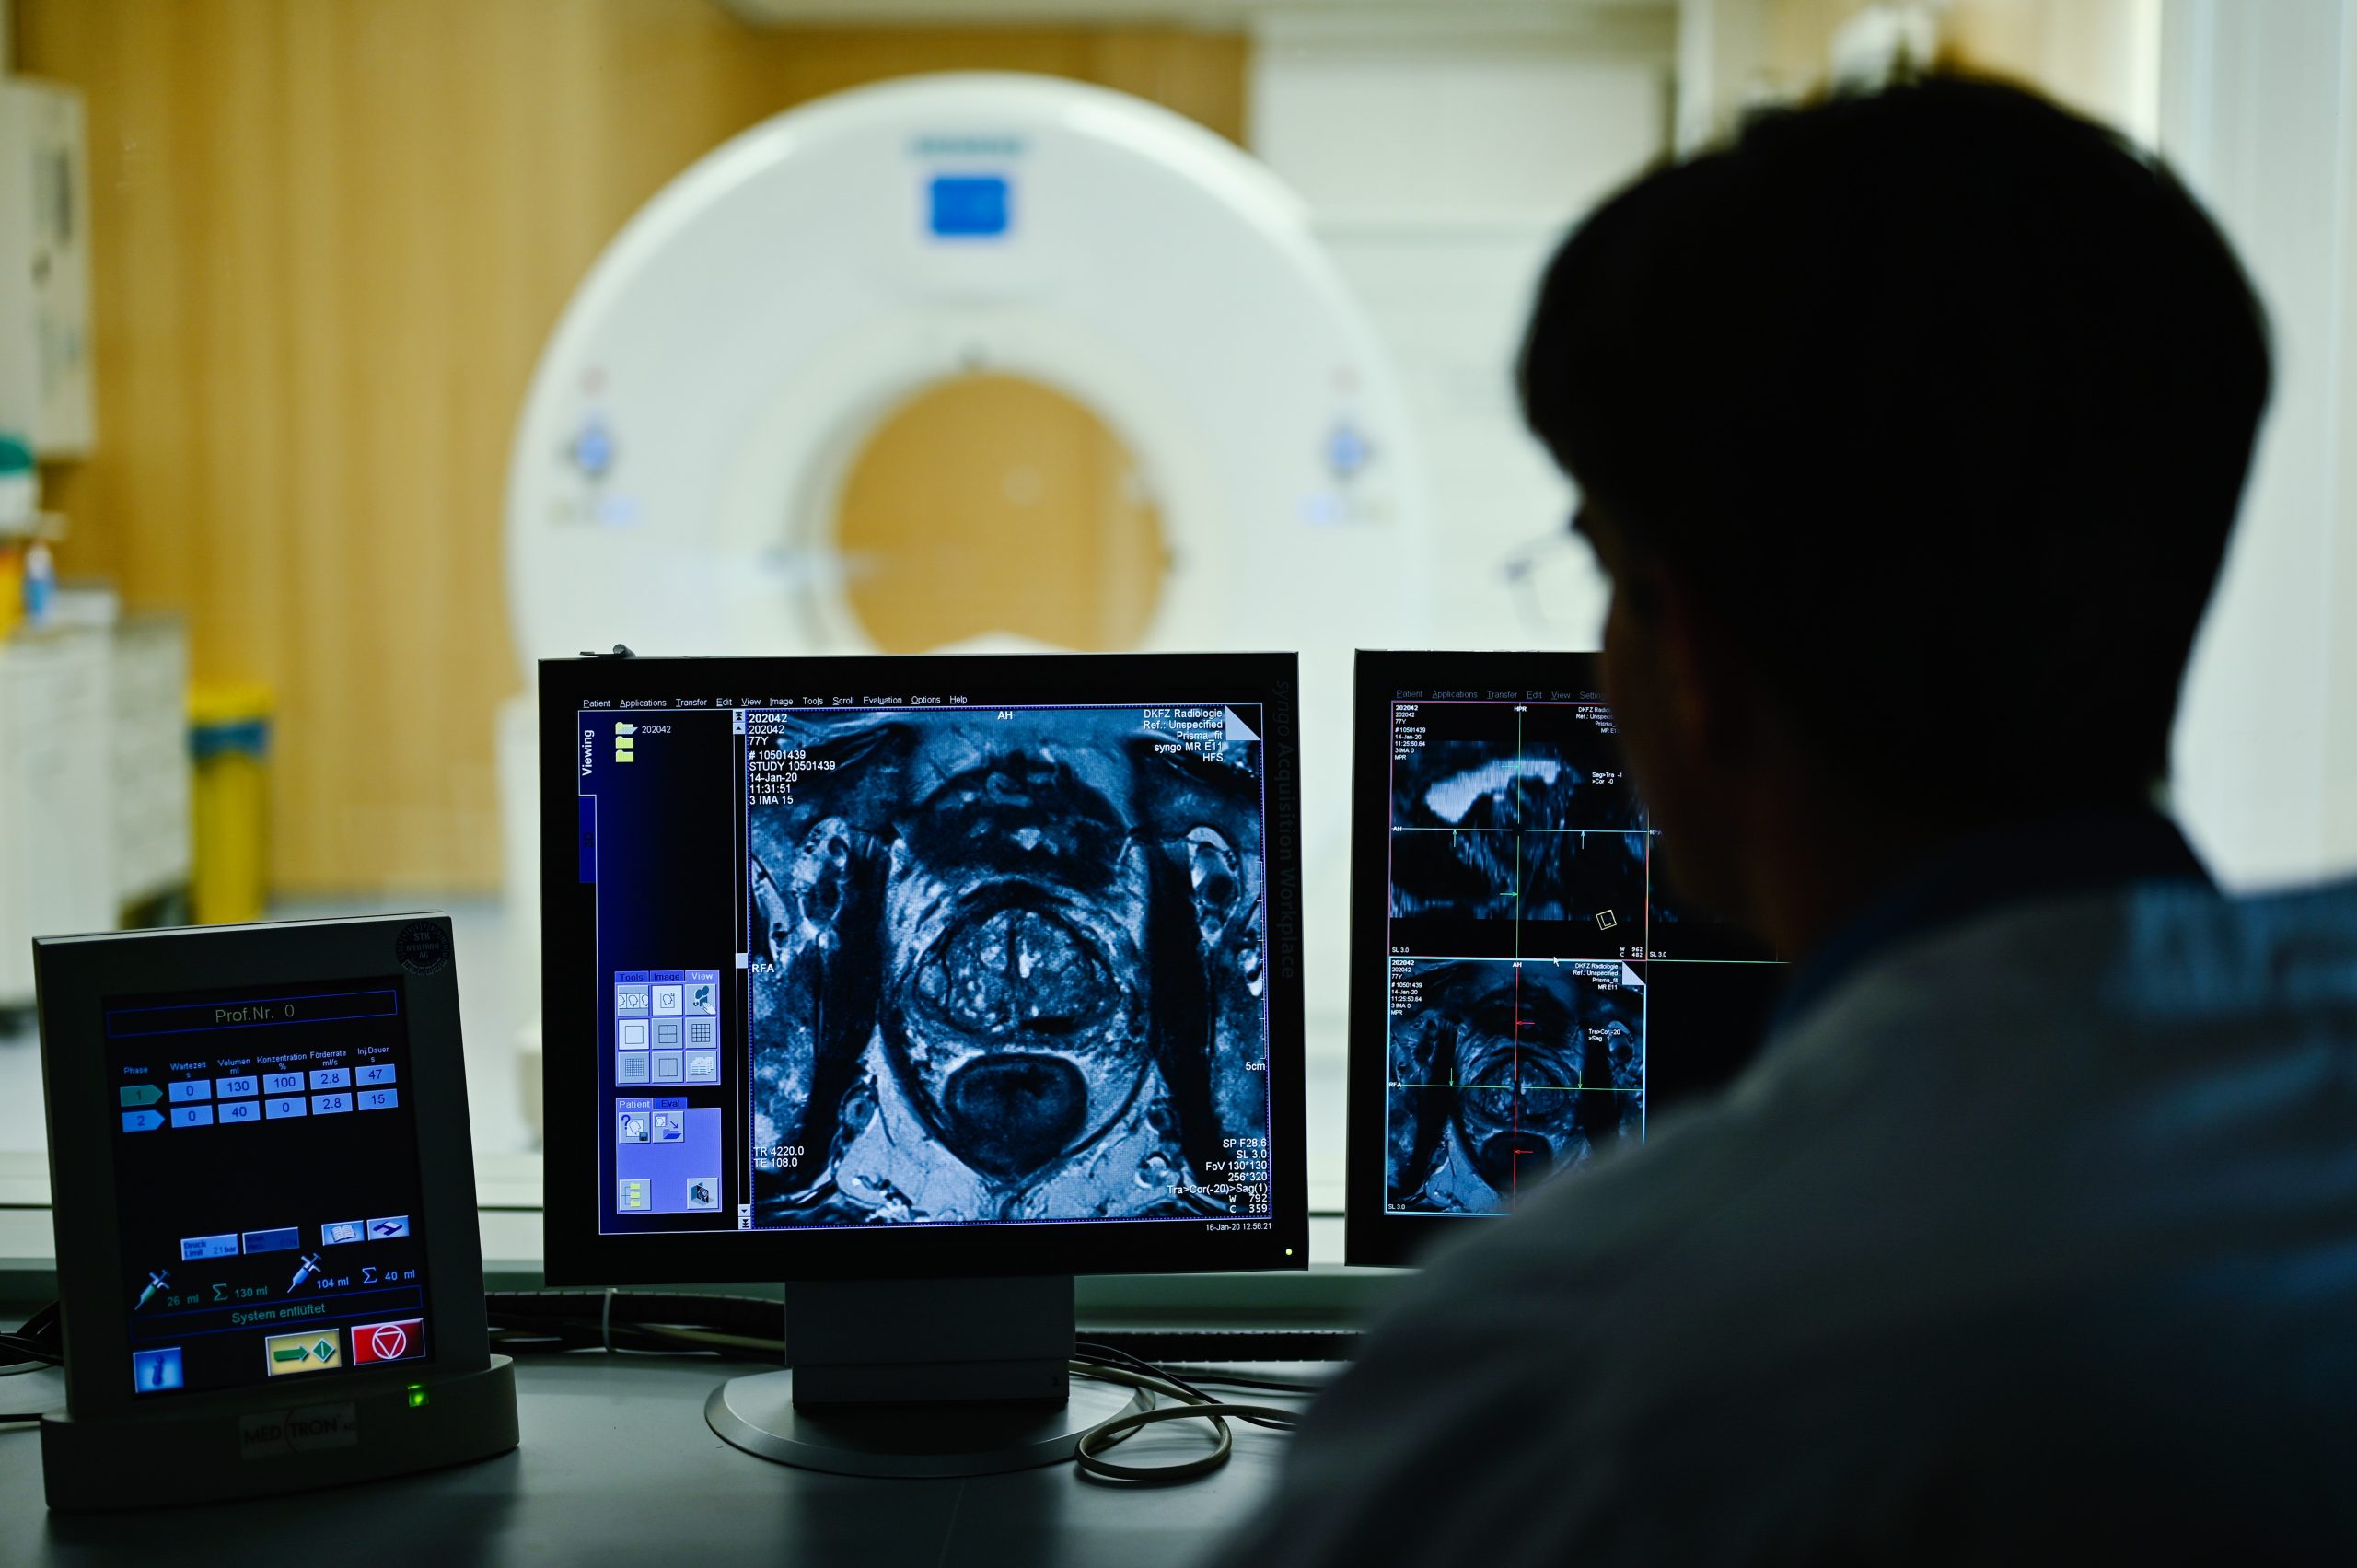 Ein Mitarbeiter des Deutschen Krebsforschungszentrum (DKFZ) betrachtet das Querschnittsbild einer Prostata. Wegen der Pandemie gehen weniger Menschen zur Vorsorge.